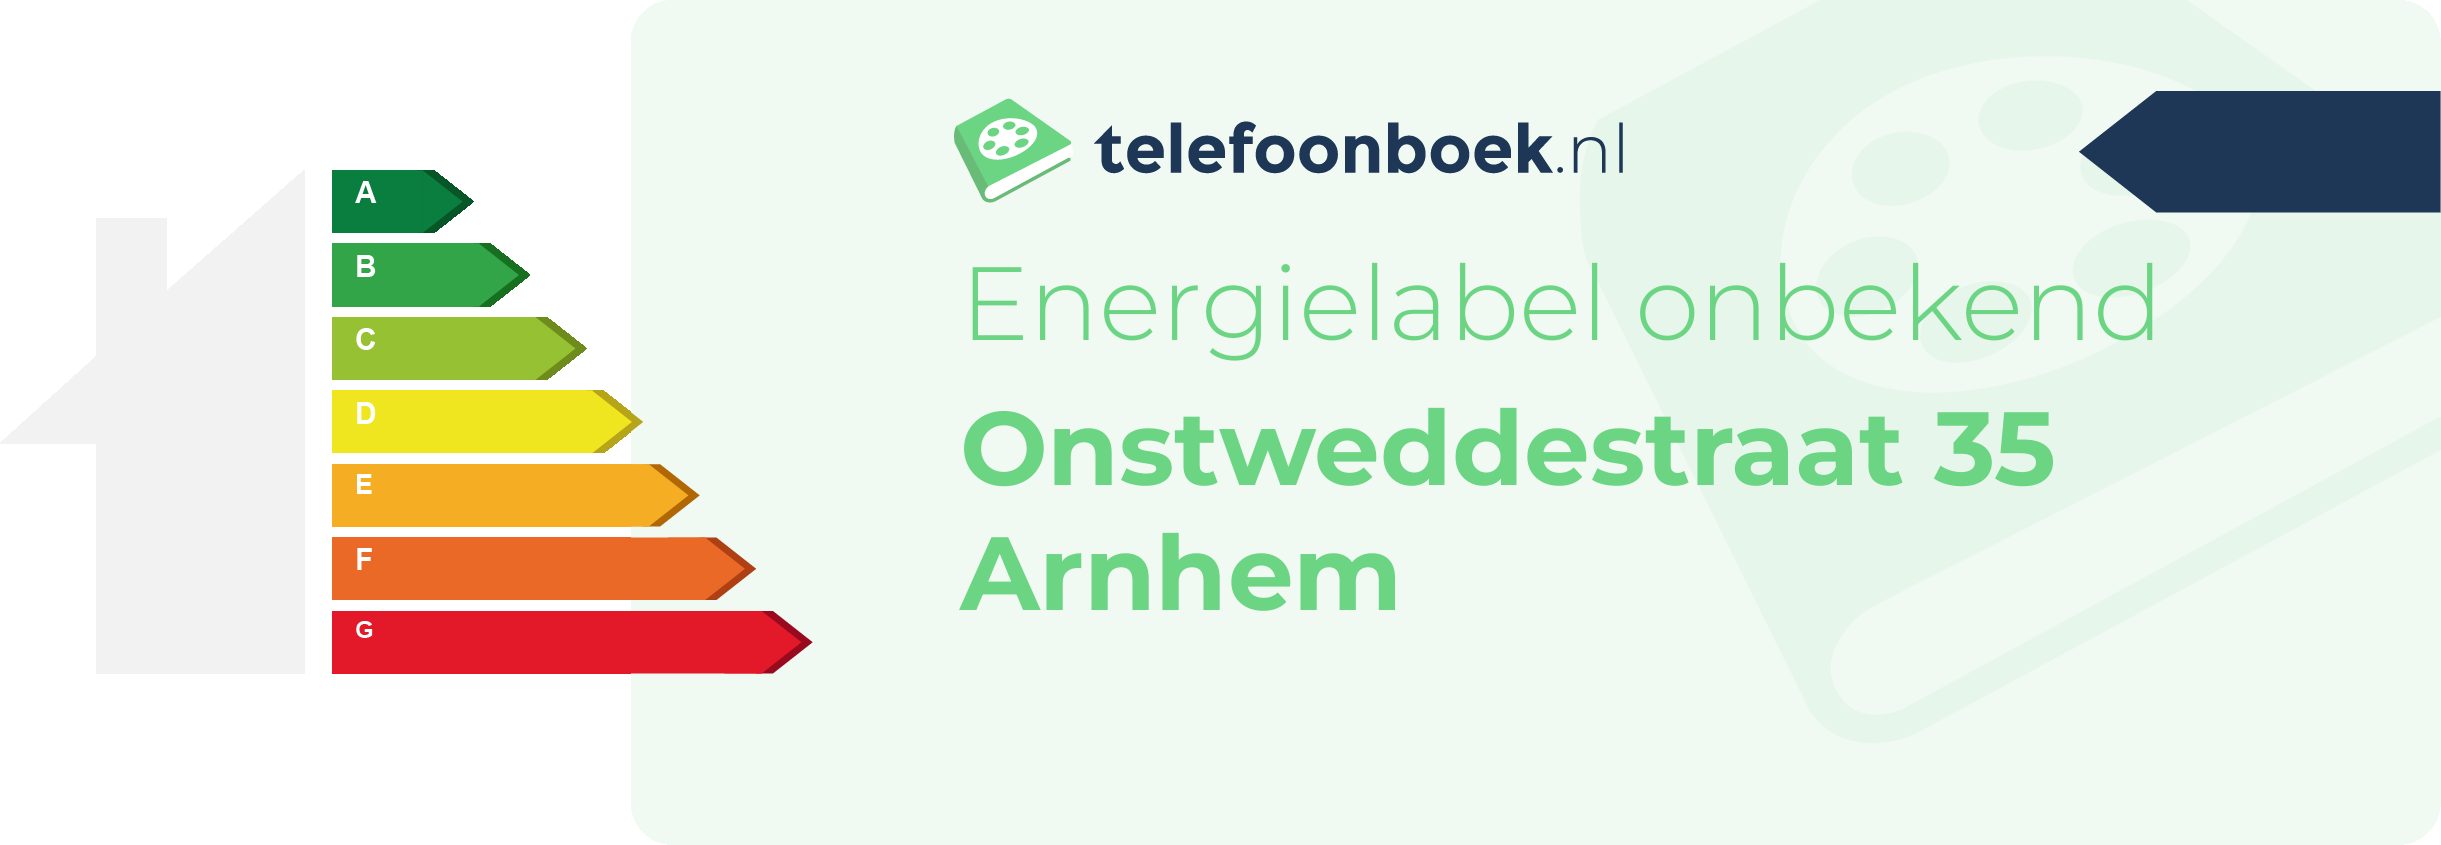 Energielabel Onstweddestraat 35 Arnhem